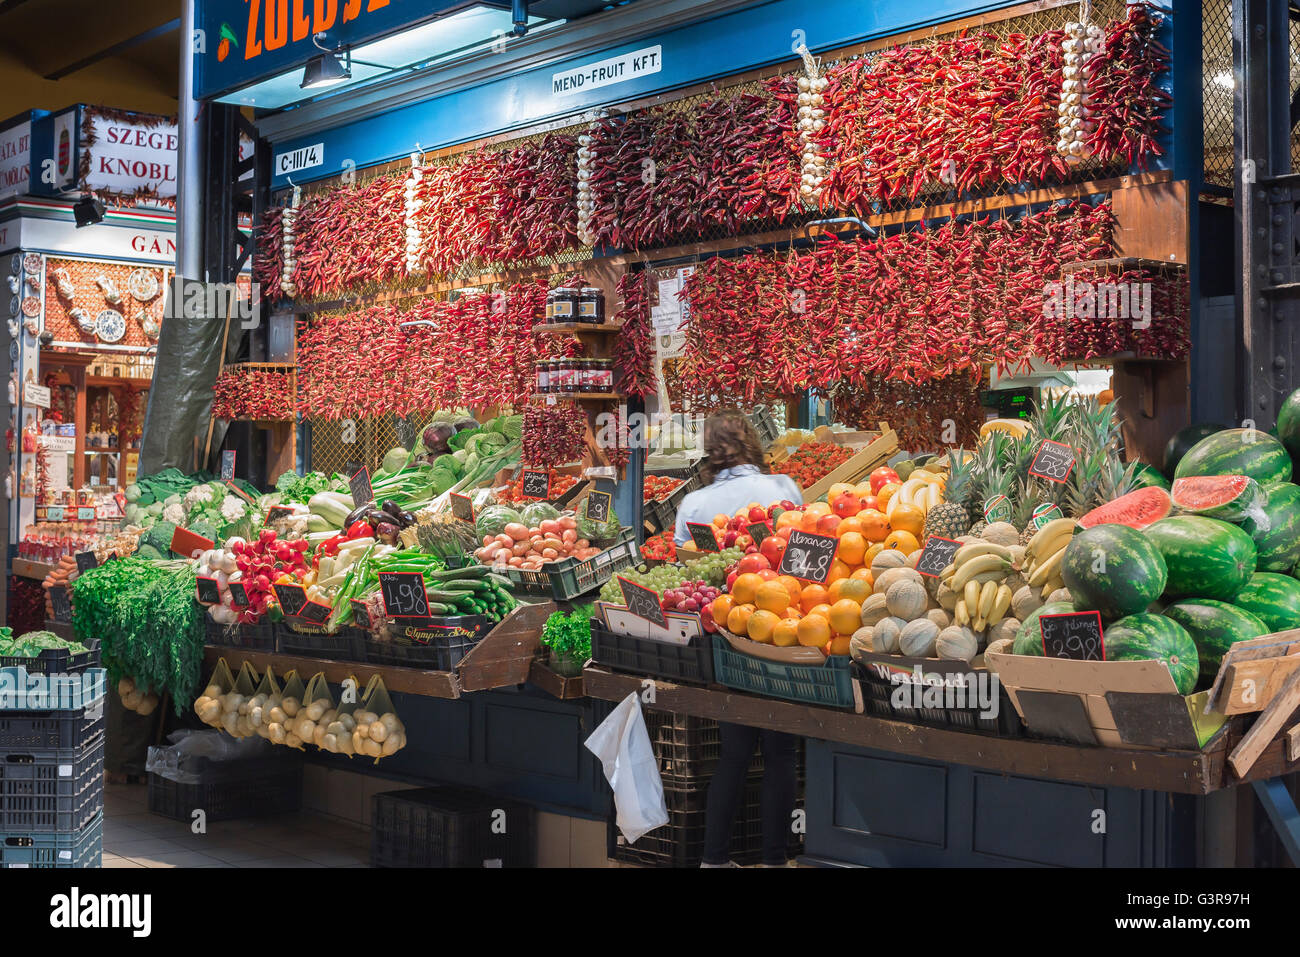 Marché alimentaire de Budapest, vue sur un stand de fruits et légumes à l'intérieur de la Grande salle du marché dans la région de Jozsefvaros à Budapest, Hongrie. Banque D'Images